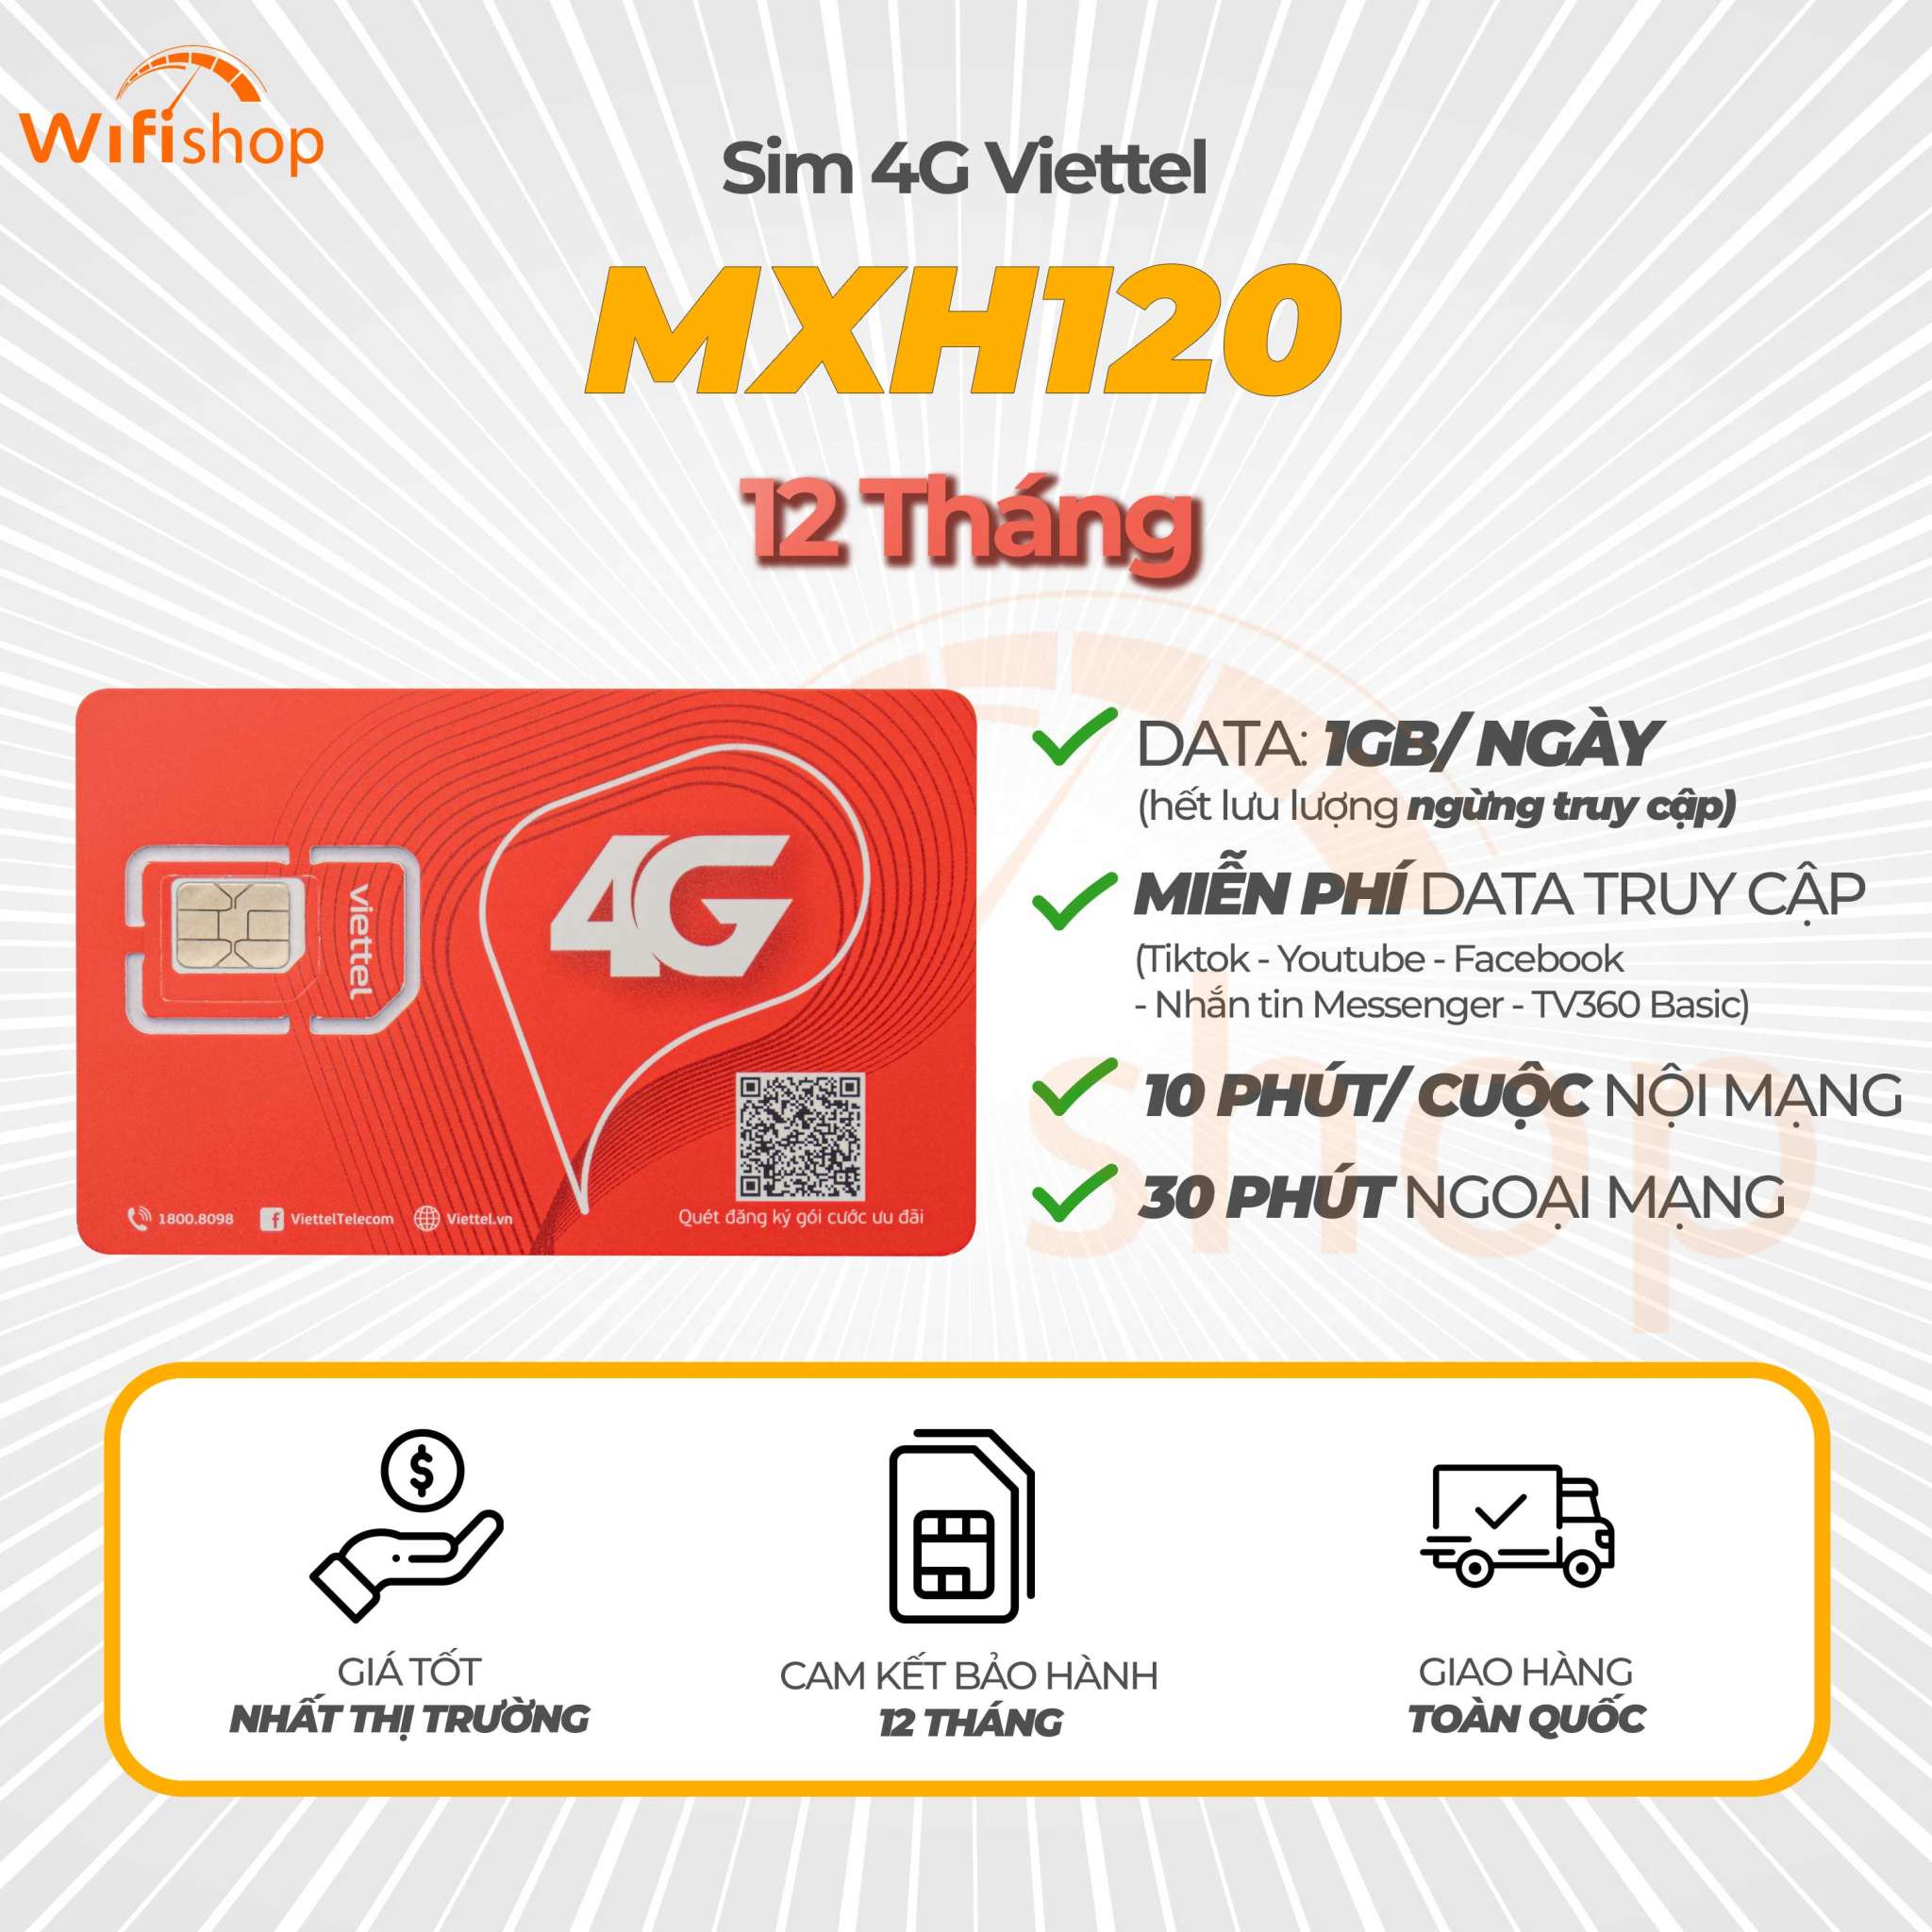 Sim Viettel MXH120 1GB/Ngày, Miễn phí YouTube, Facebook, Tiktok, Messenger, Trọn gói 12 tháng